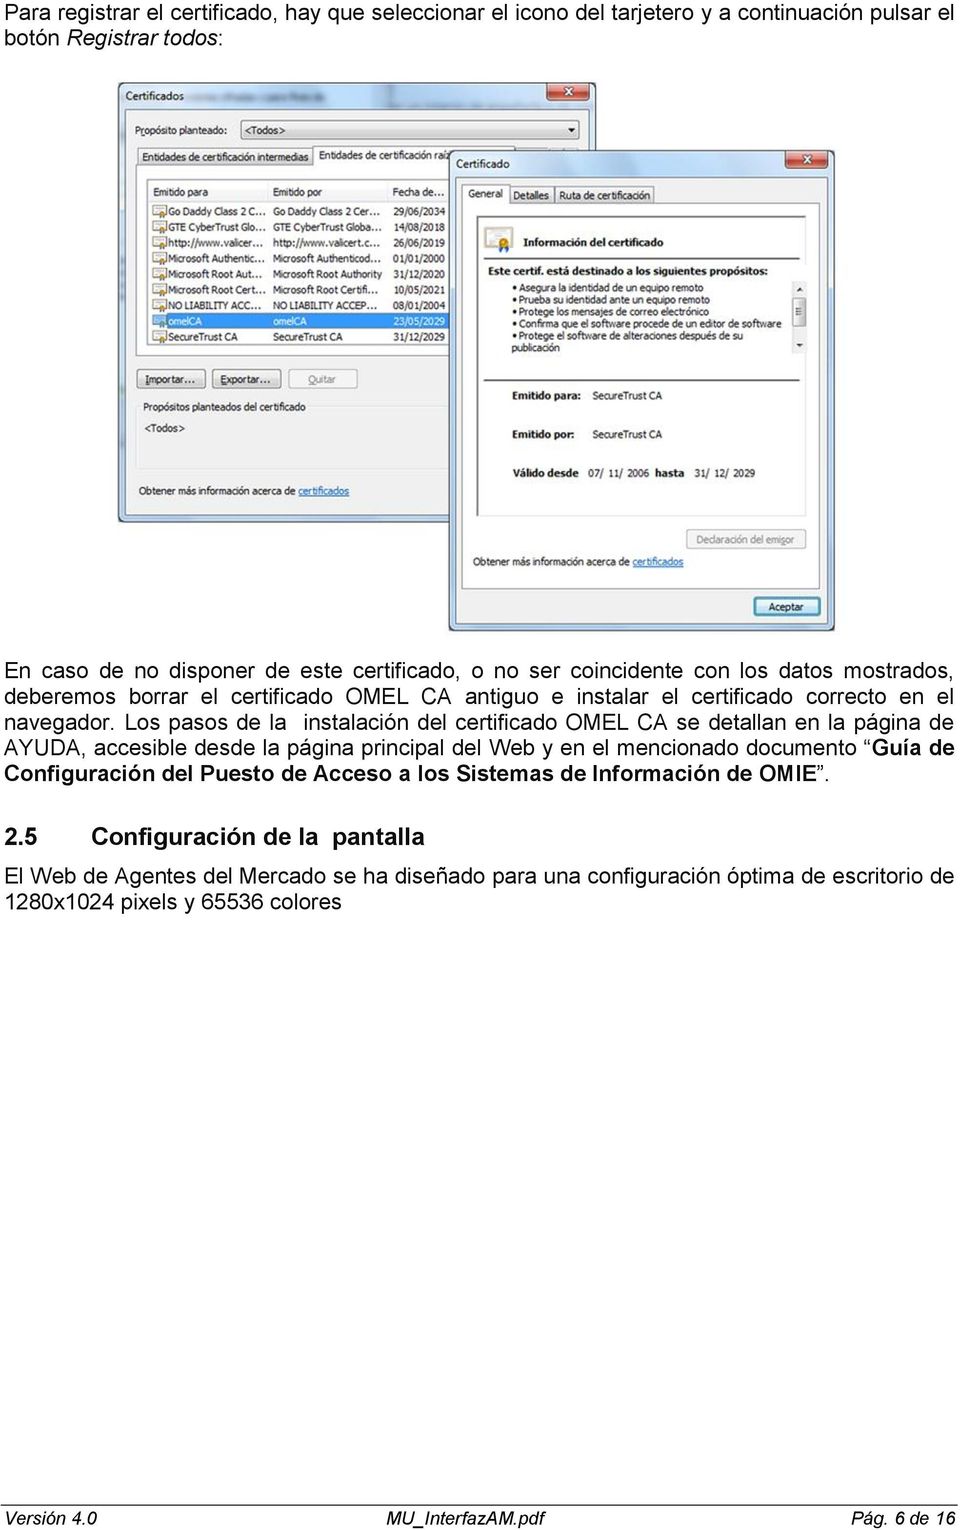 Los pasos de la instalación del certificado OMEL CA se detallan en la página de AYUDA, accesible desde la página principal del Web y en el mencionado documento Guía de Configuración del